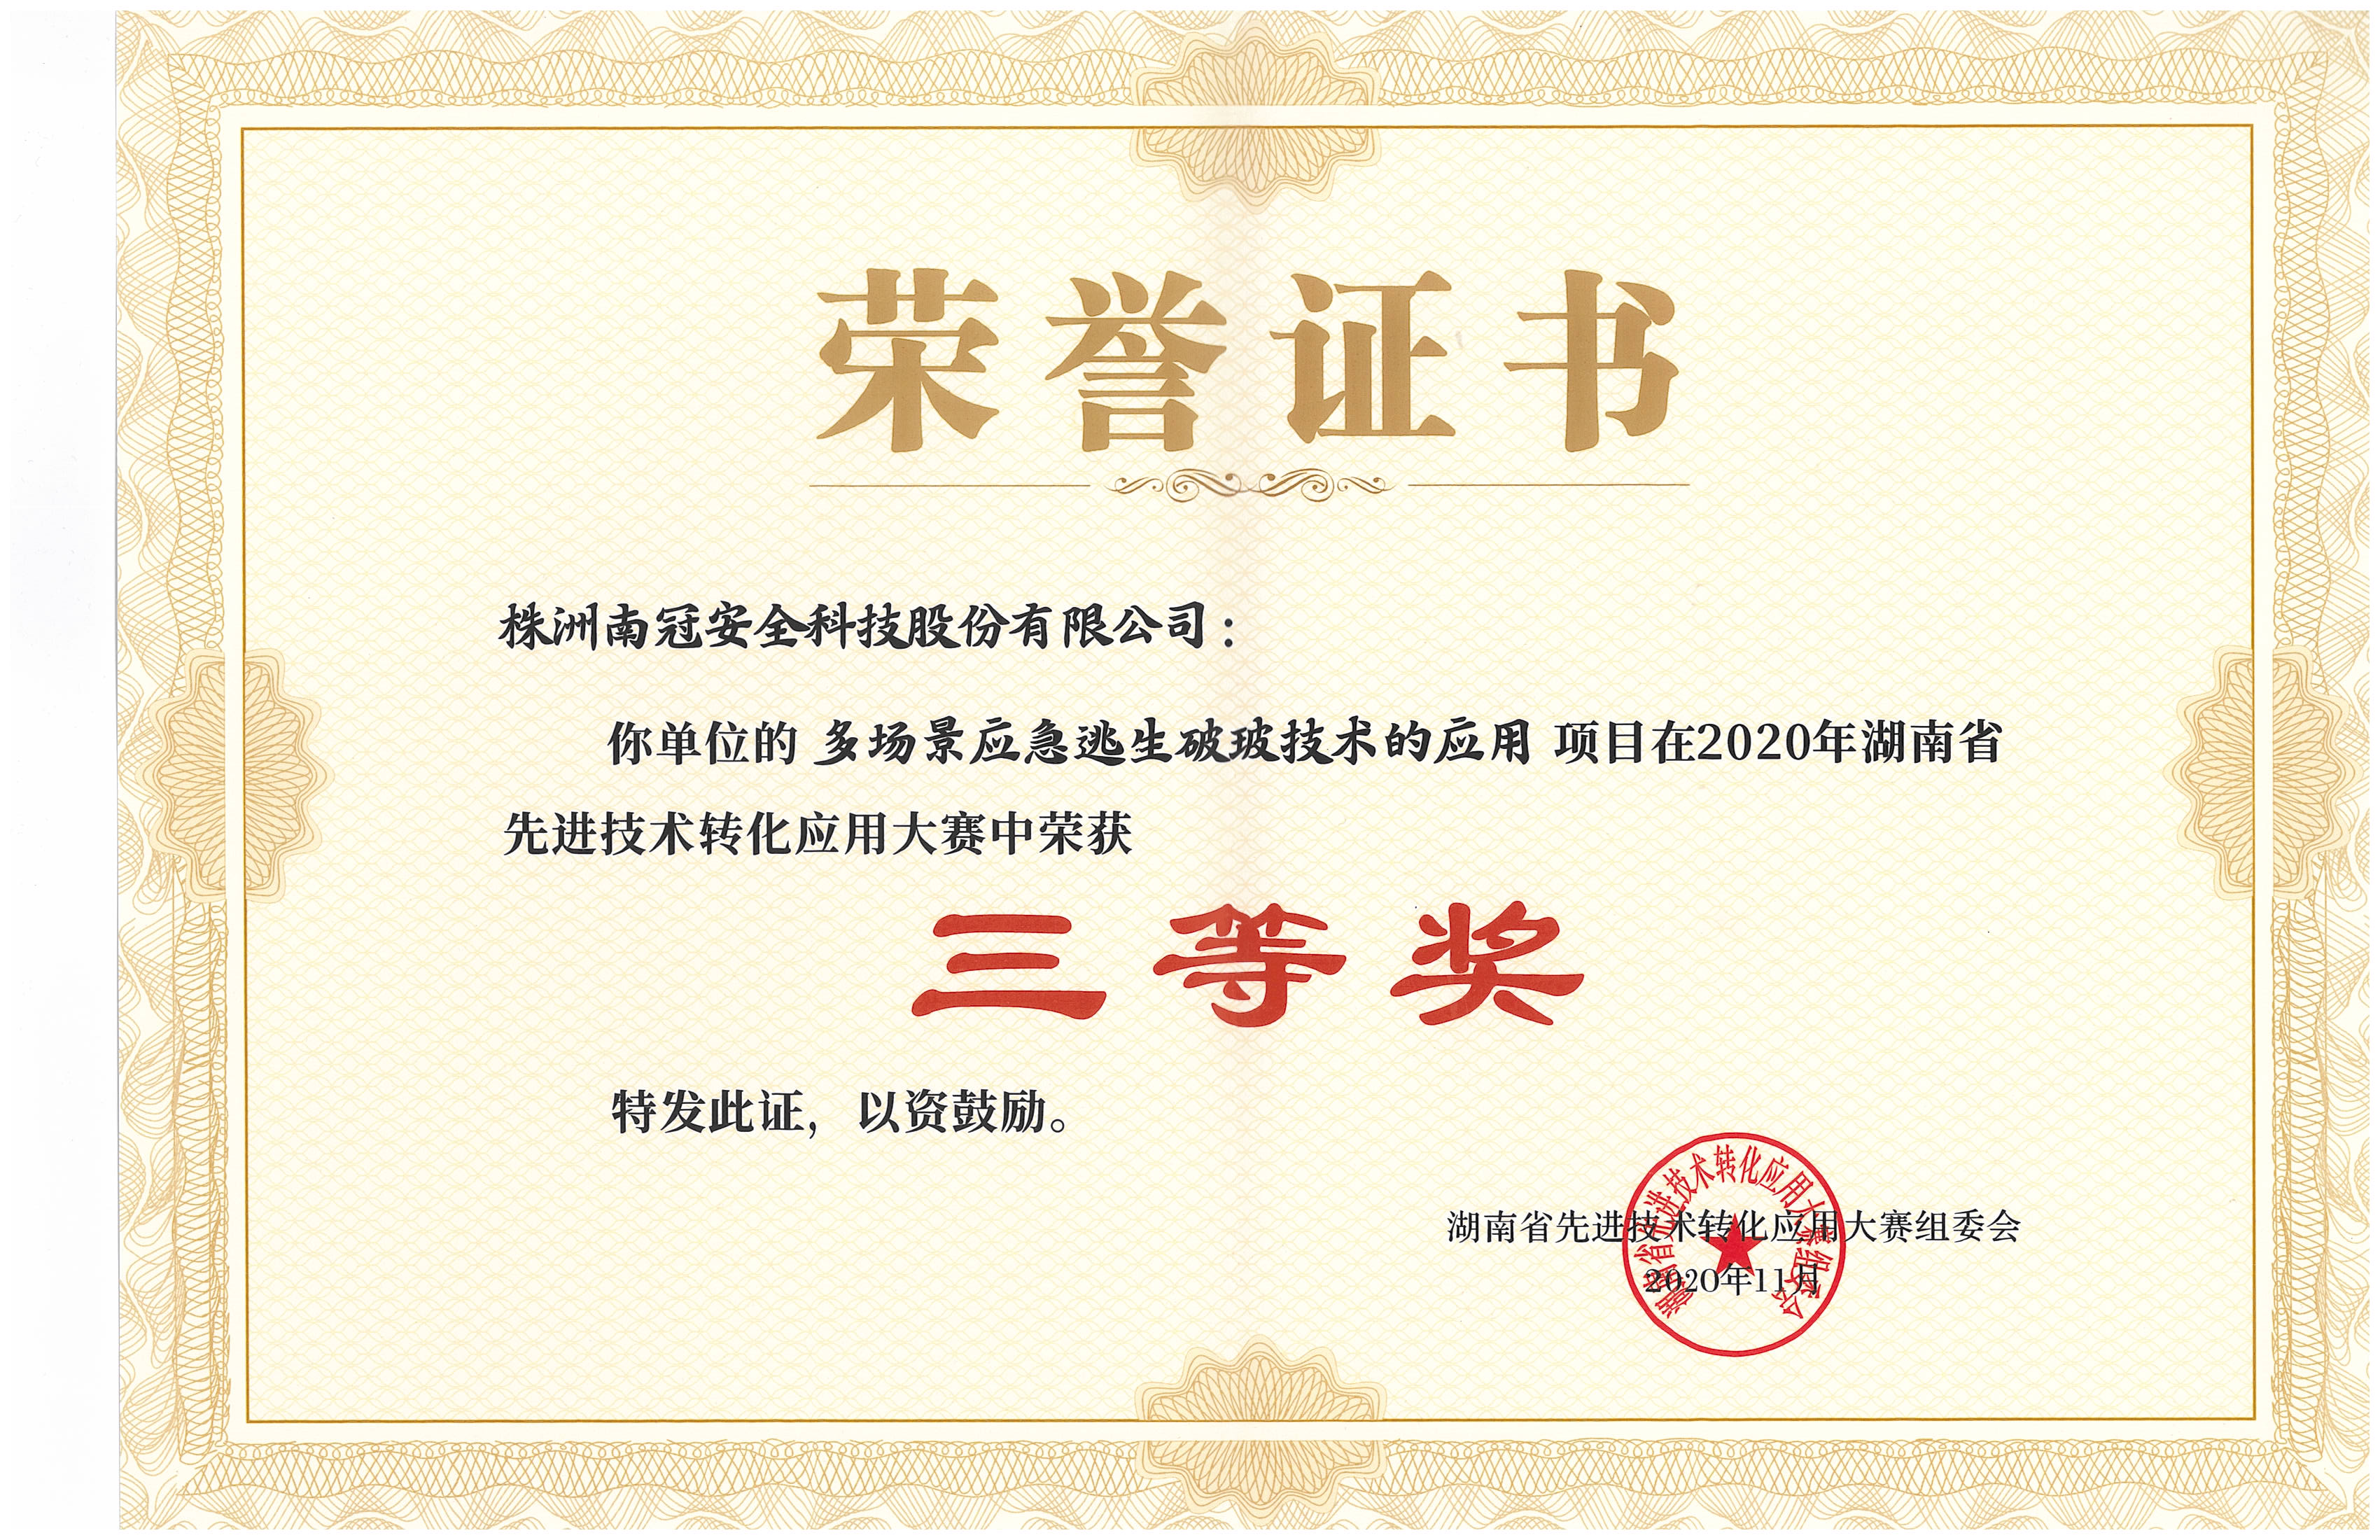 2020年湖南省先進技術轉化應用大賽榮獲三等獎aaa